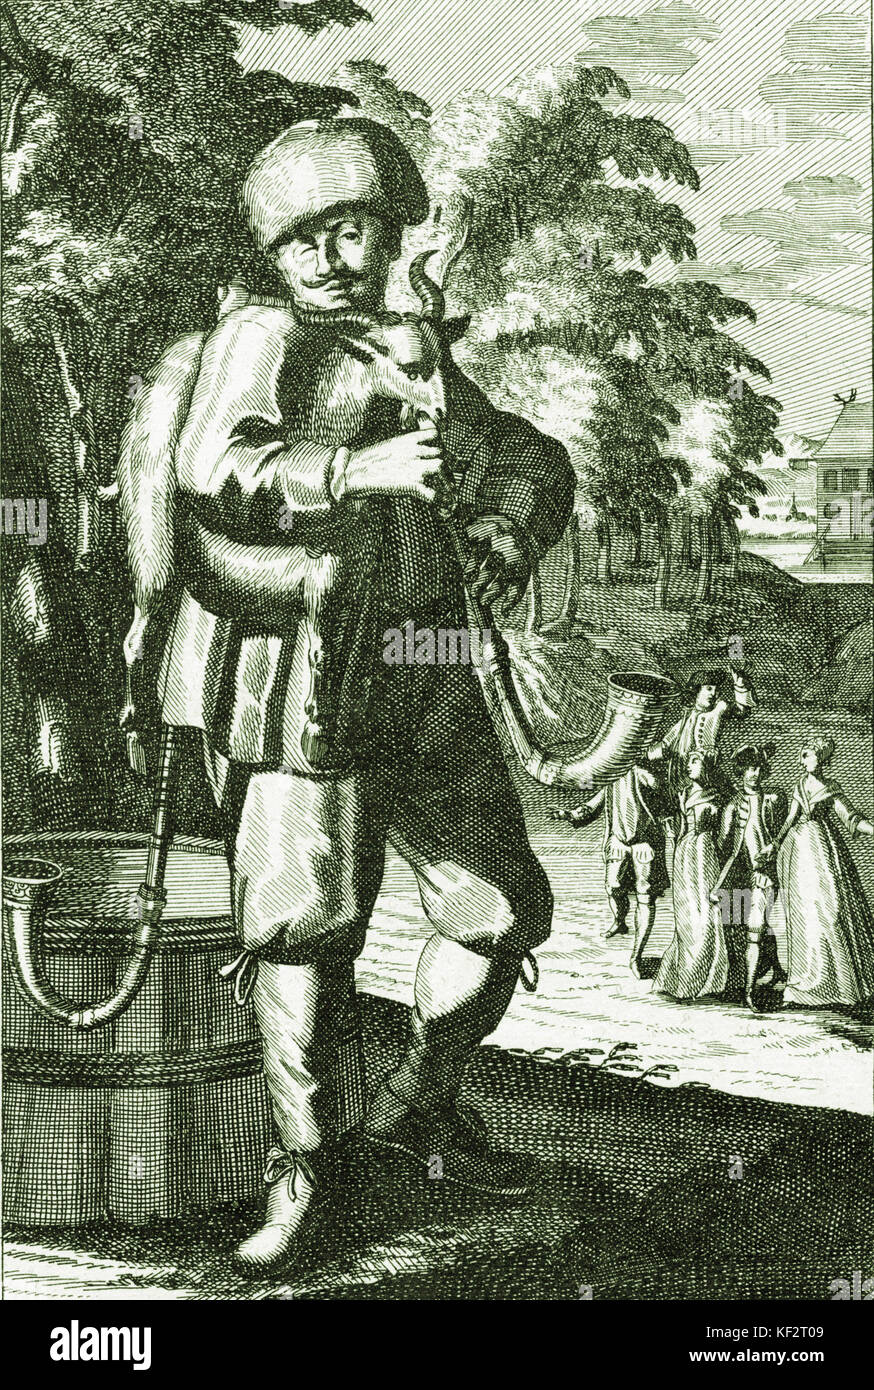 Anfang des 18. Jahrhunderts der Mann mit Dudelsack. Hier als "Polnische Ziege" beschrieben. Kupferstich von J C Weigel (1661-1726). Dudelsack und Dudelsackspieler Stockfoto